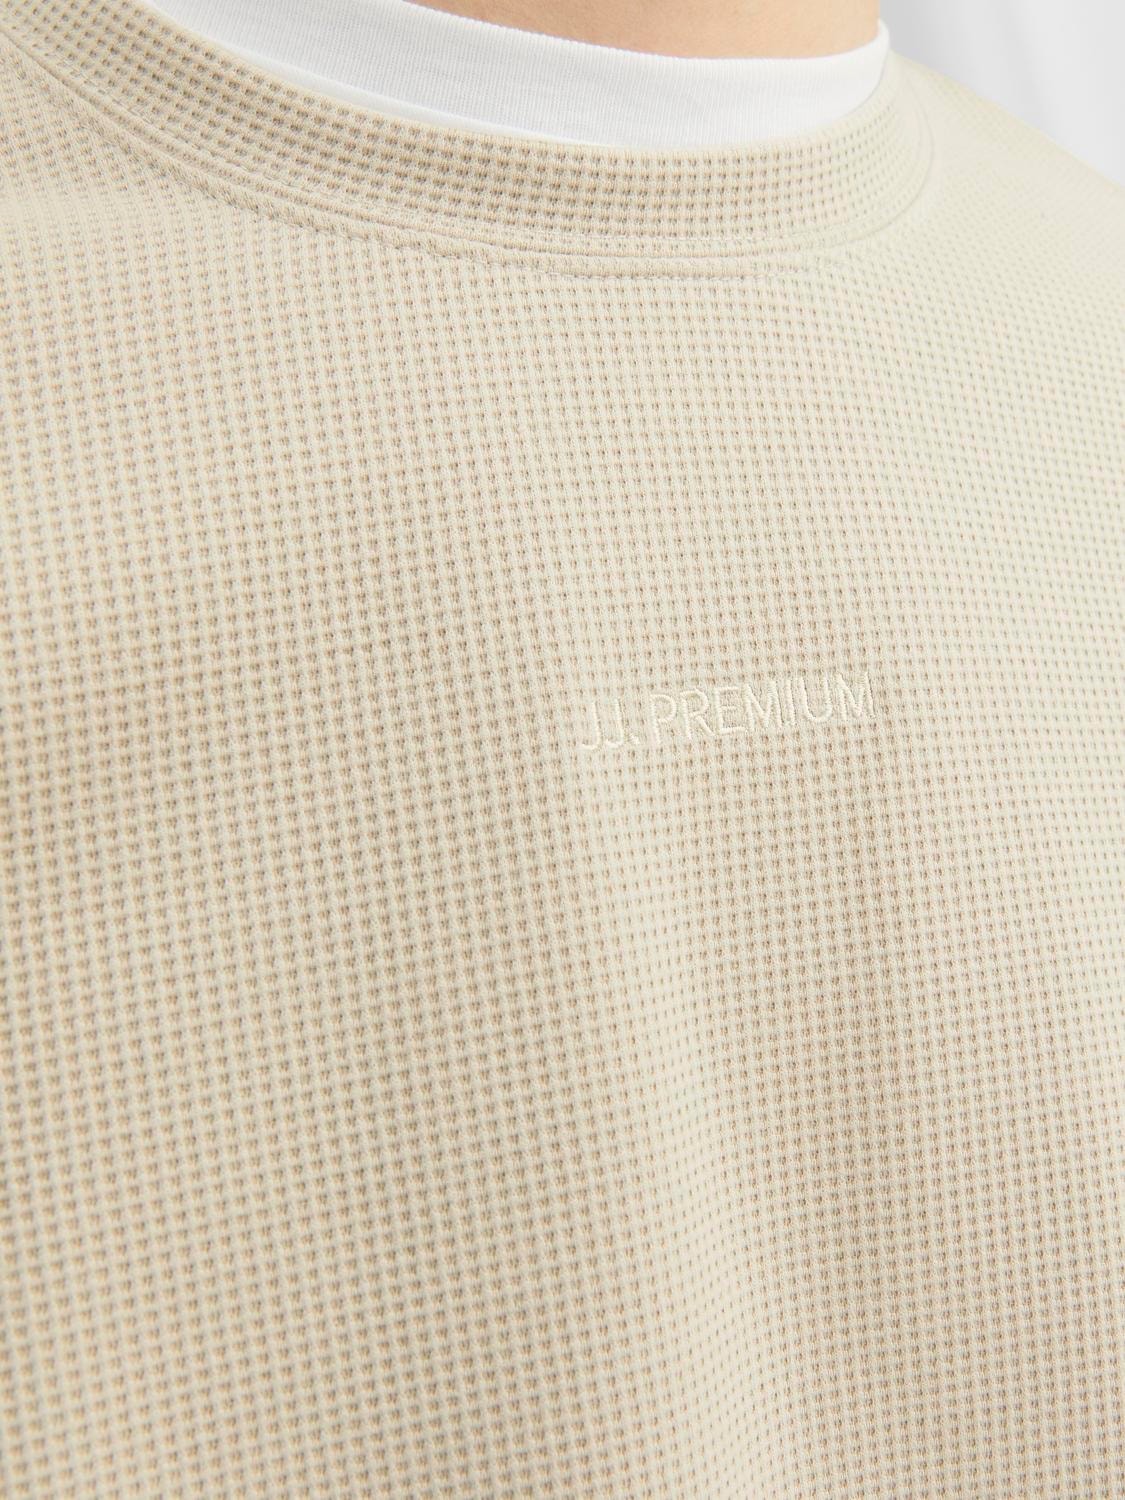 Jack & Jones Ensfarvet Sweatshirt med rund hals -Pure Cashmere - 12241205